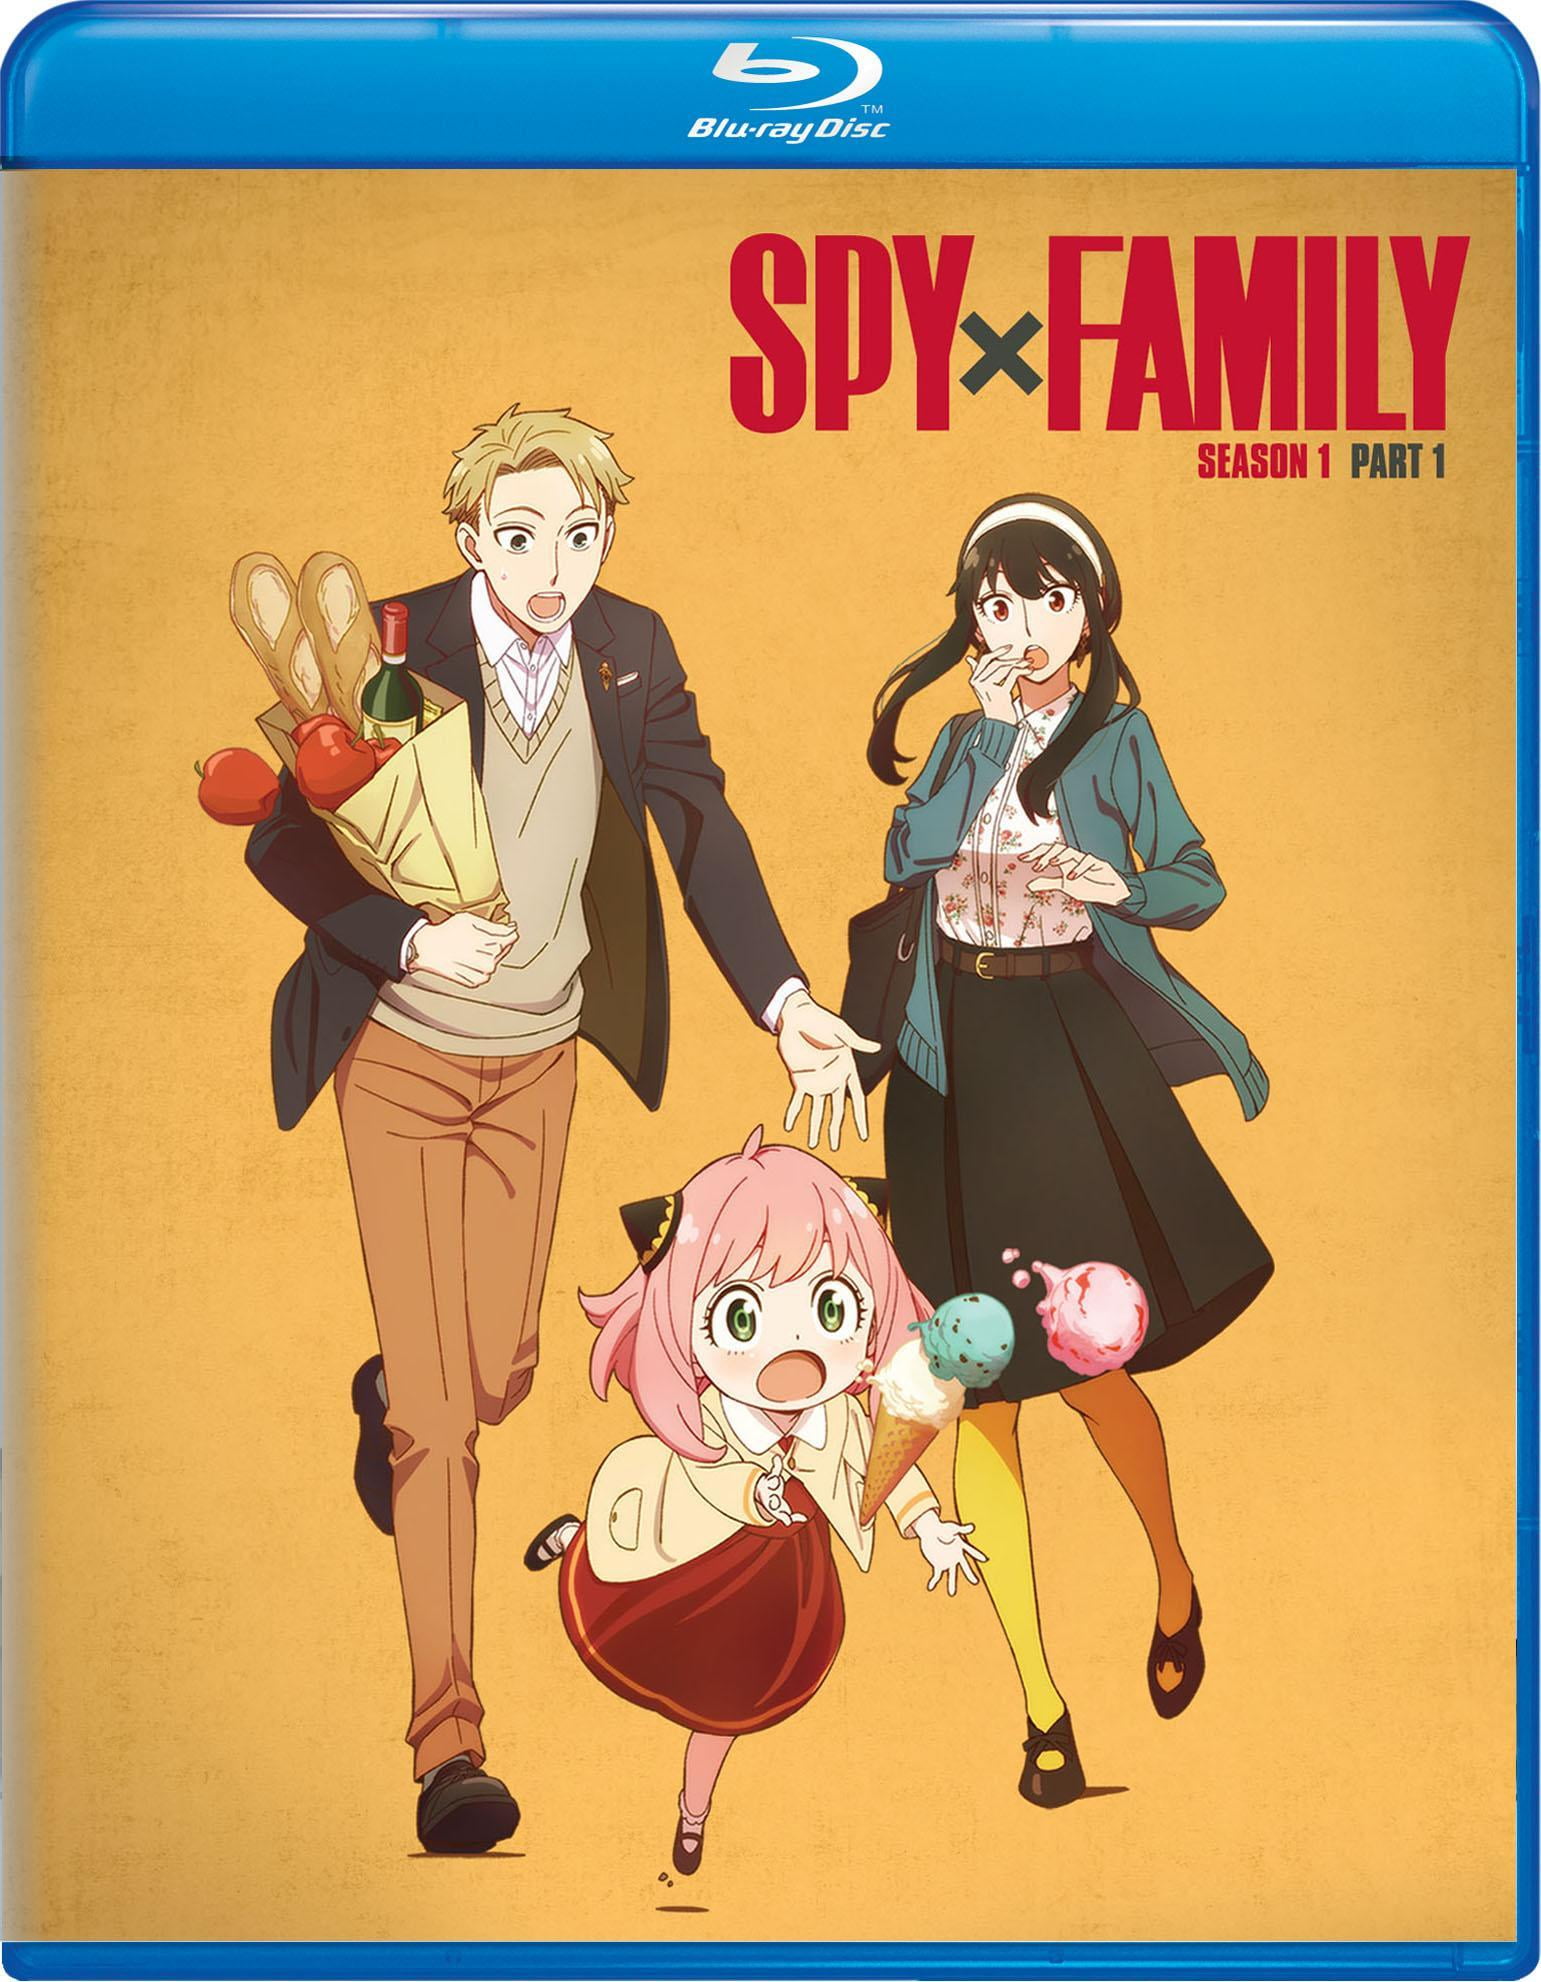  SPY x FAMILY: Season 1 Part 1 [Blu-ray] : Various, Various:  Movies & TV